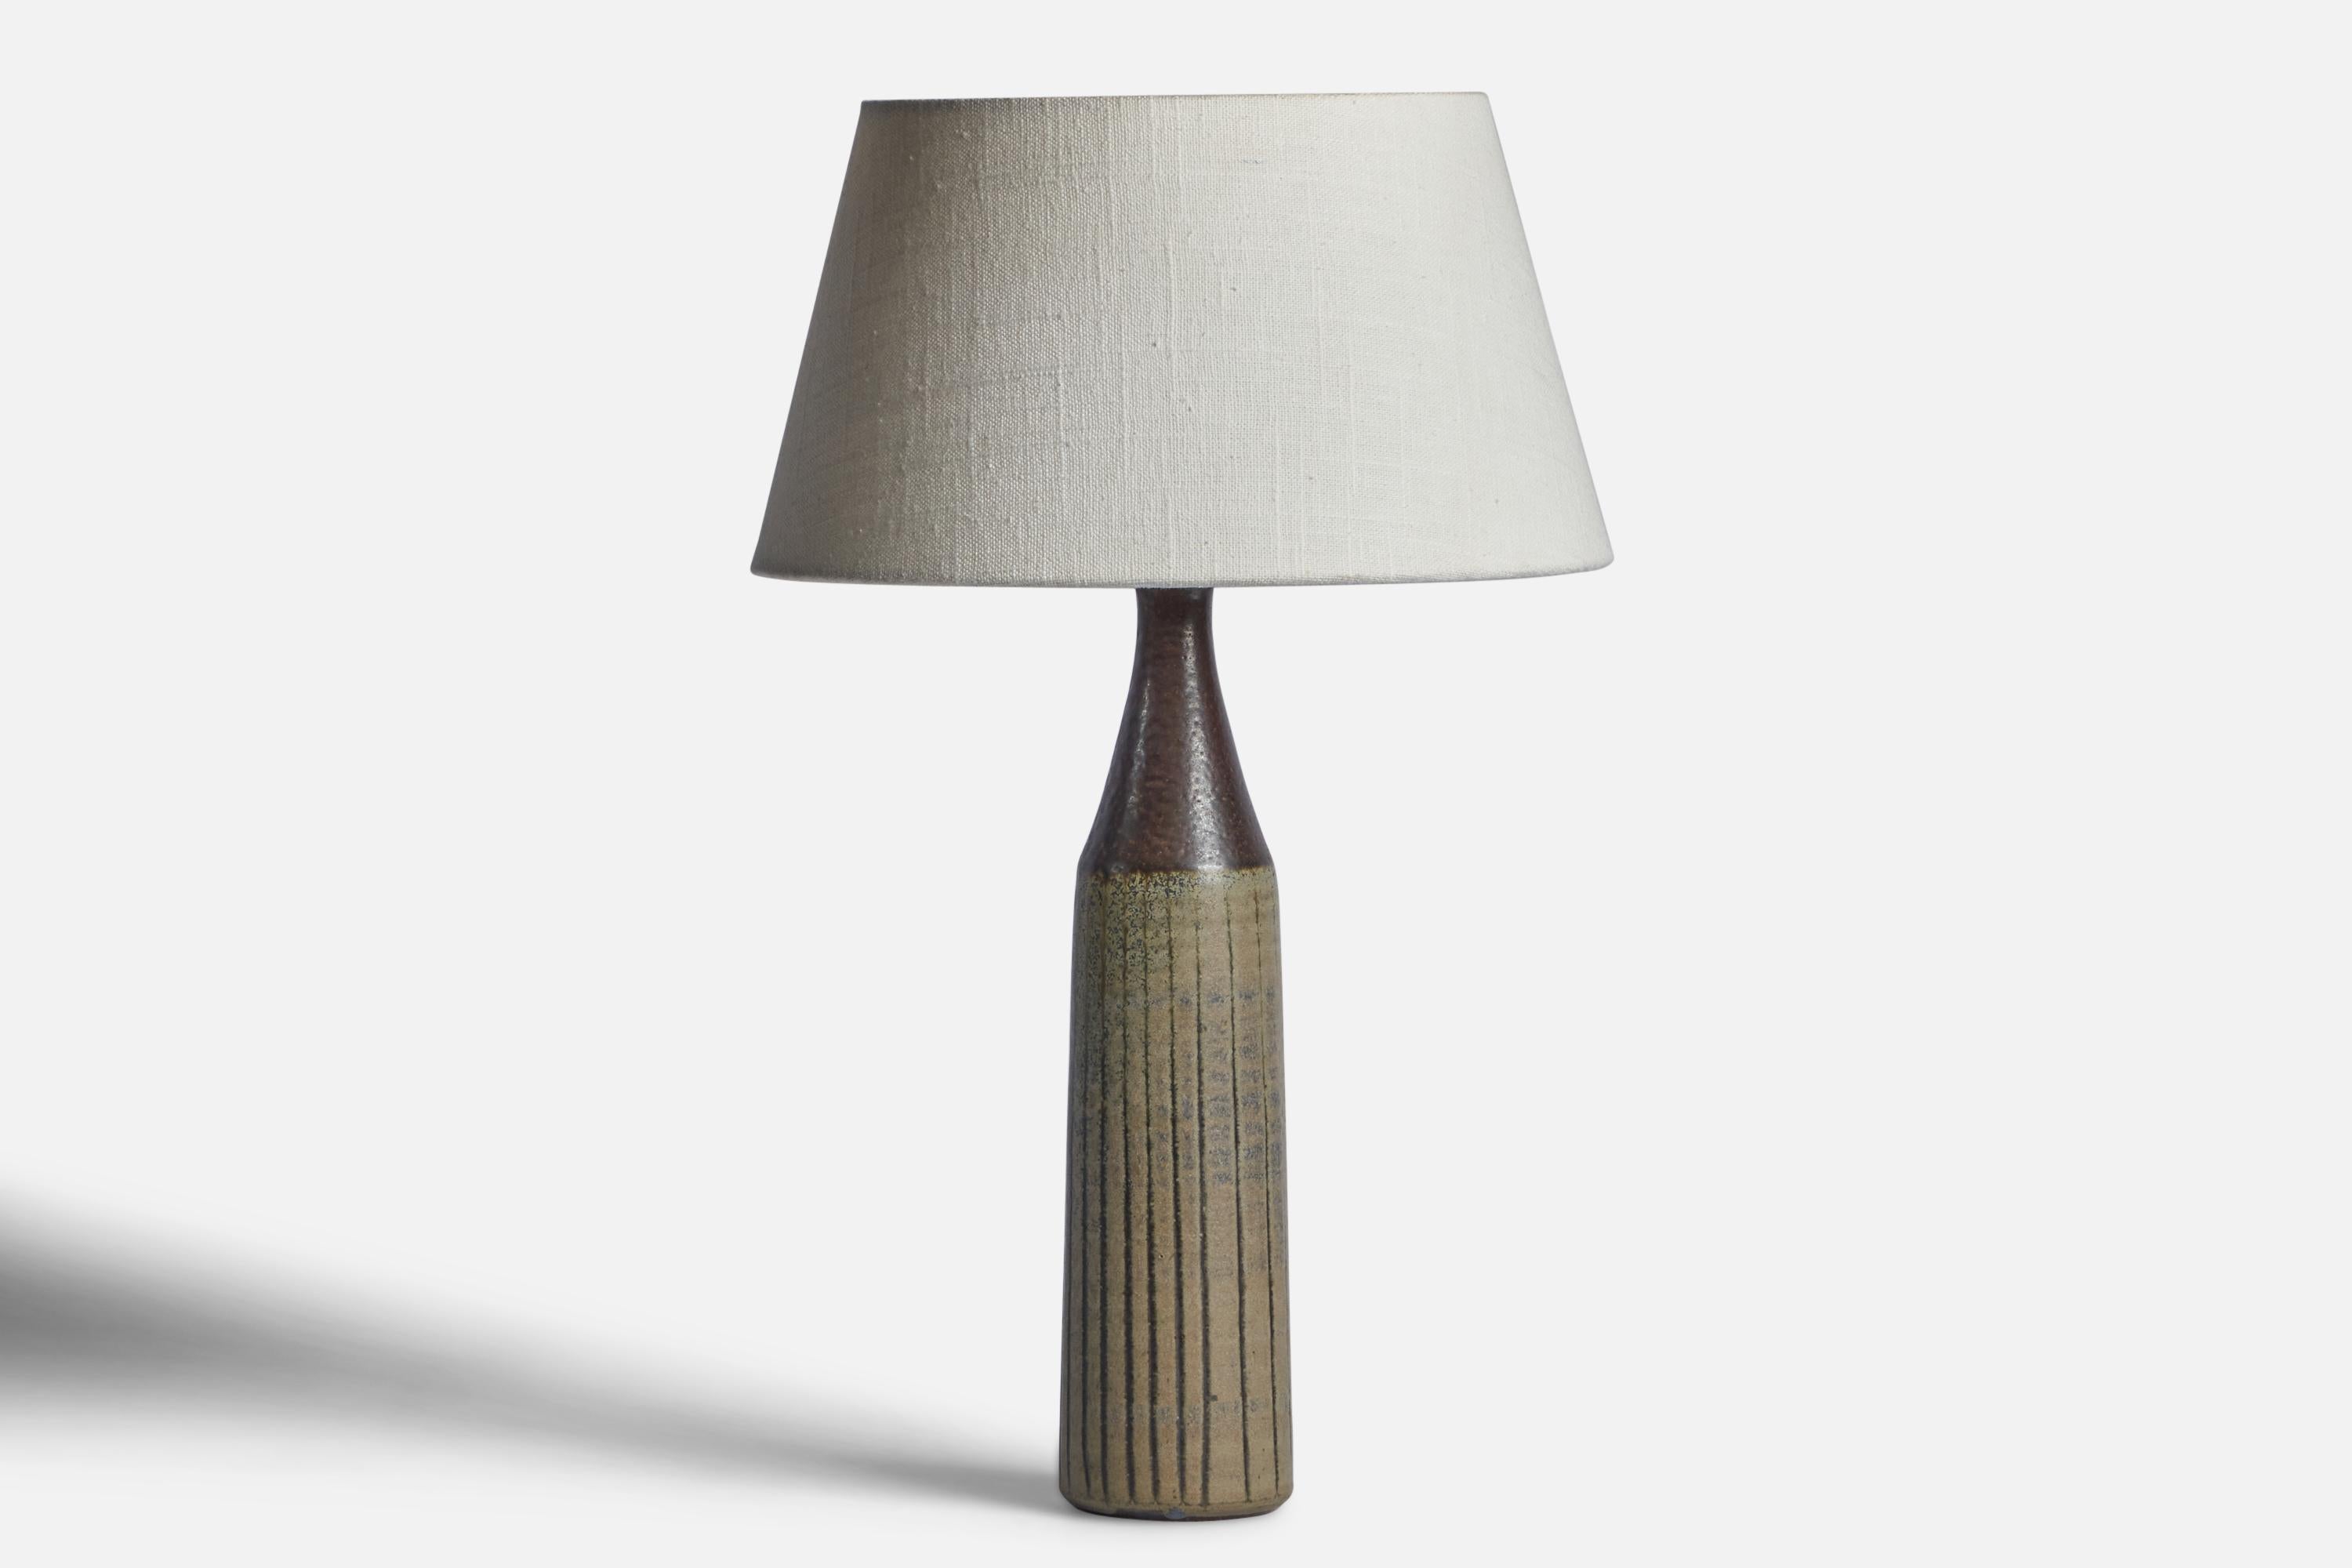 Lampe de table en grès émaillé gris et vert, conçue et produite par Wallåkra, Suède, vers les années 1950.

Dimensions de la lampe (pouces) : 13.25